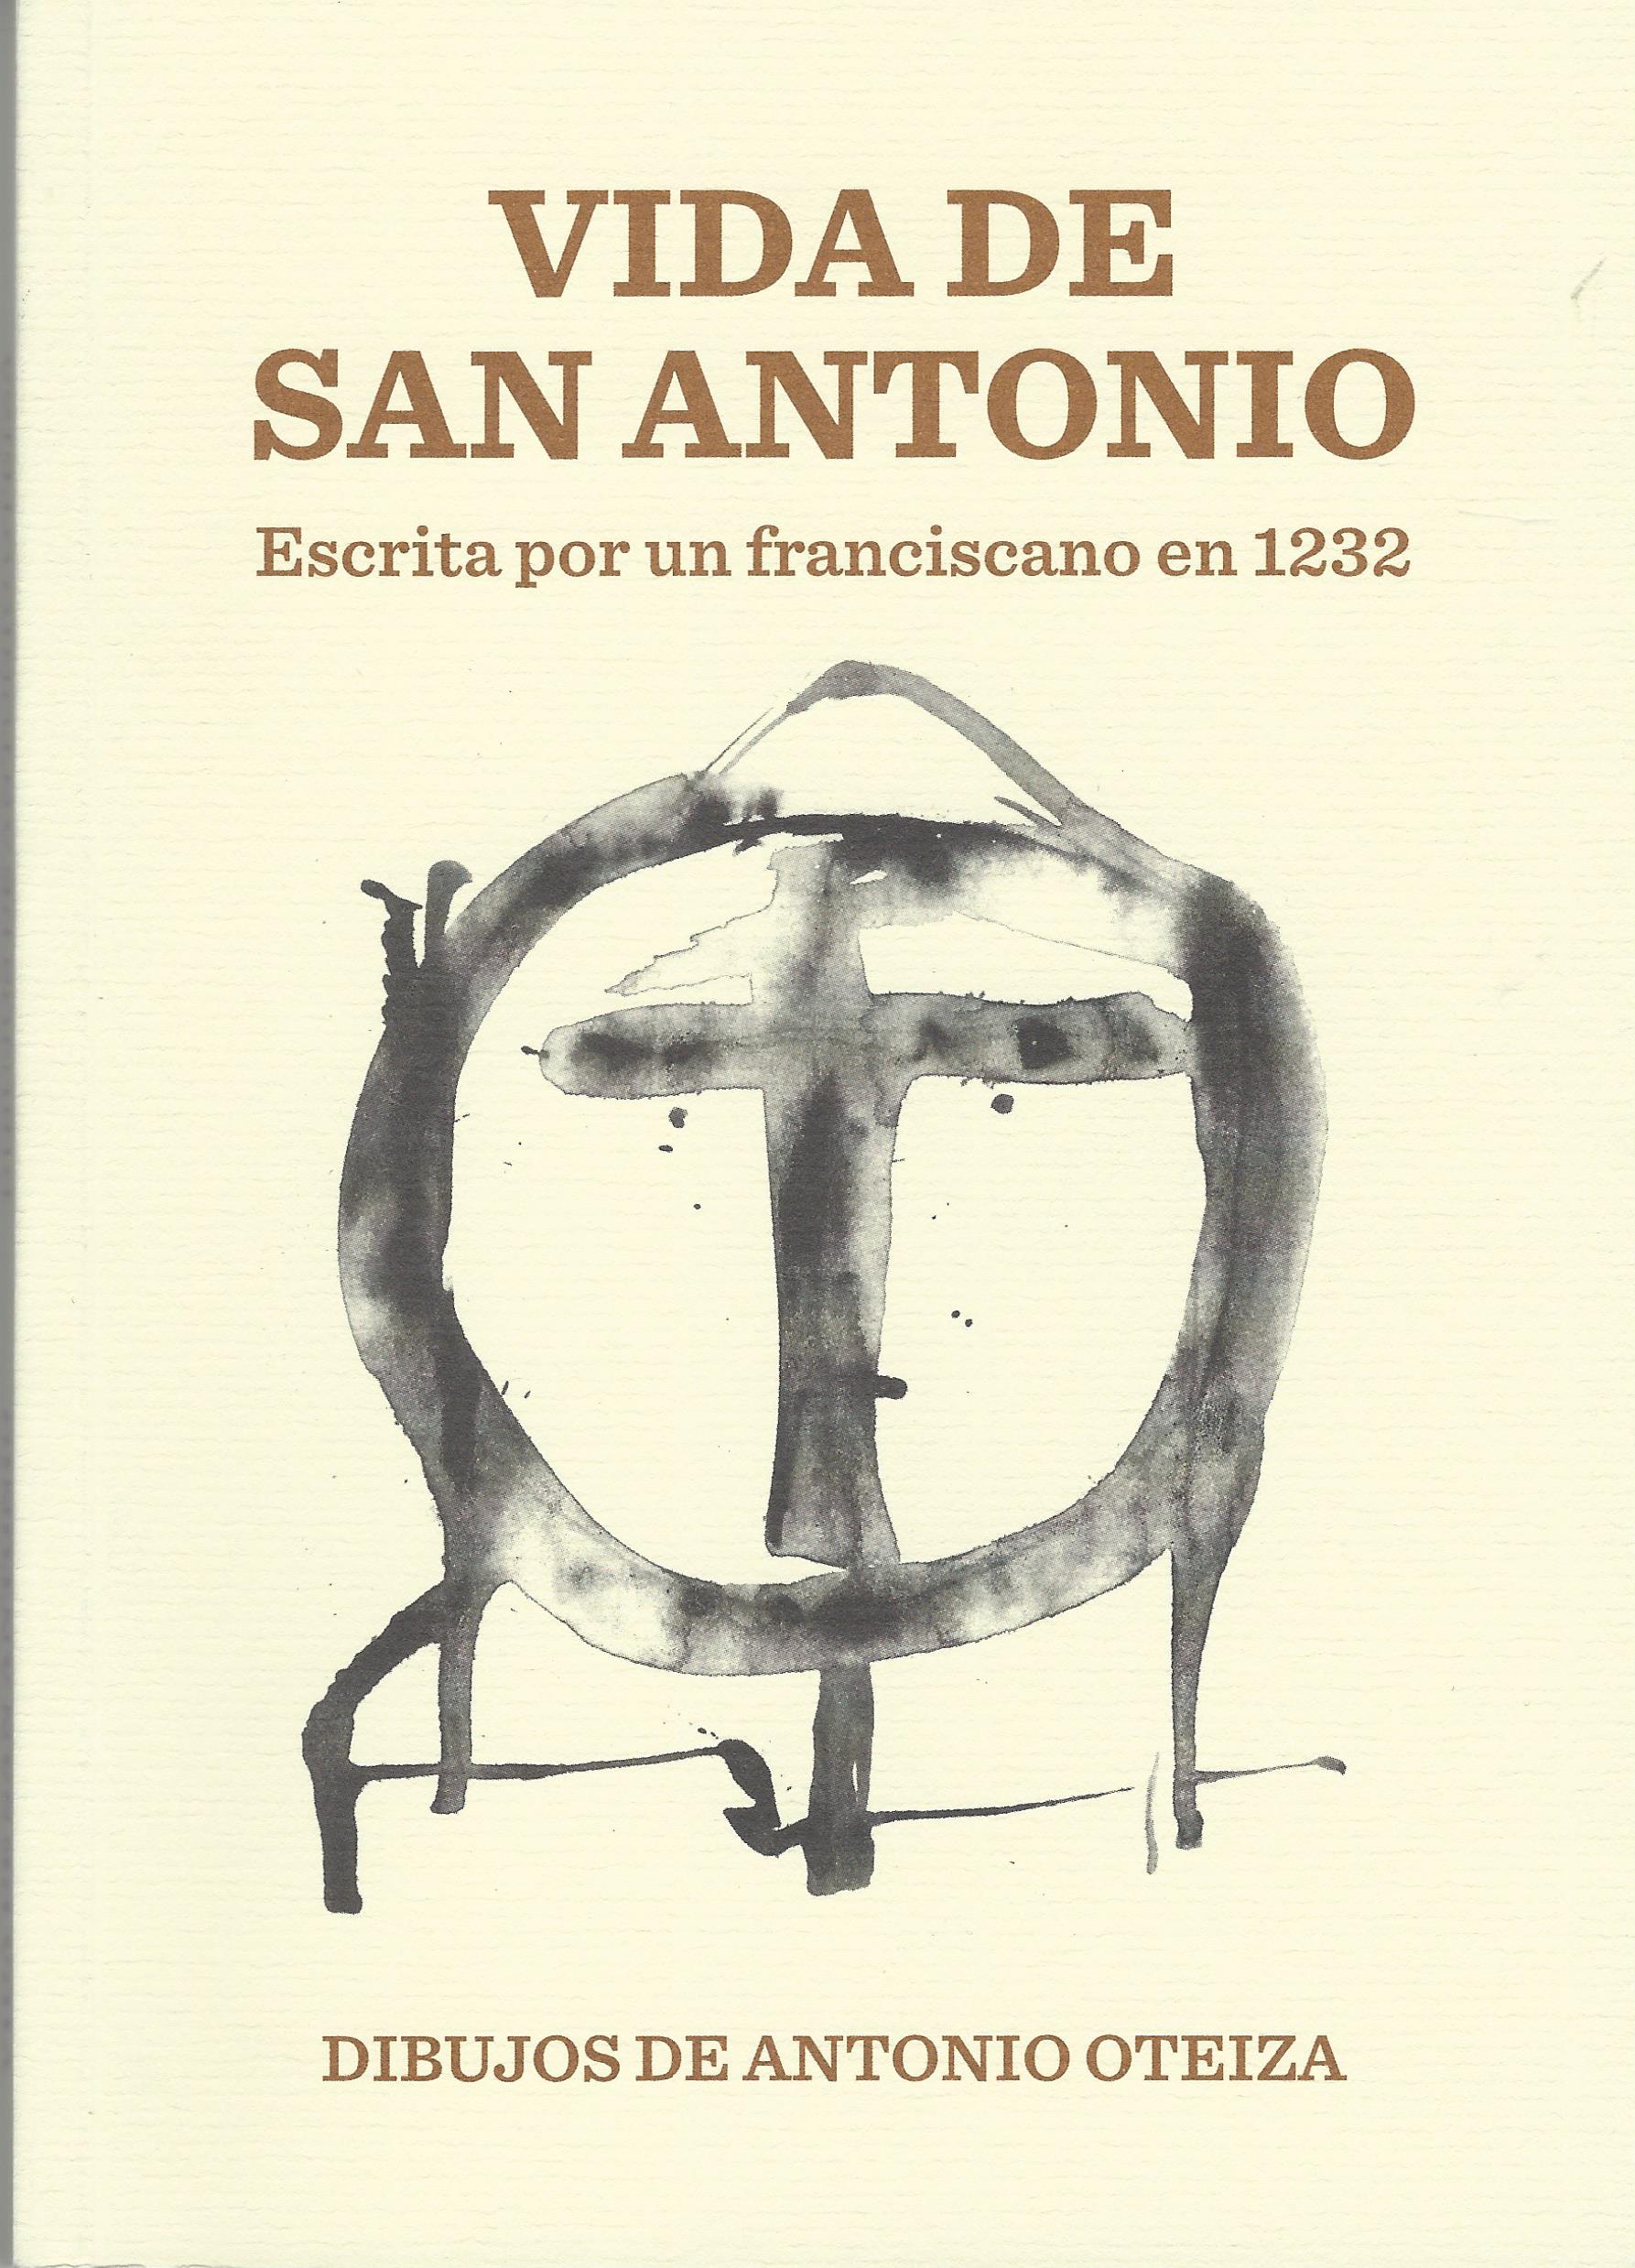 Vida de San Antonio. Escrita por un franciscano en 1232